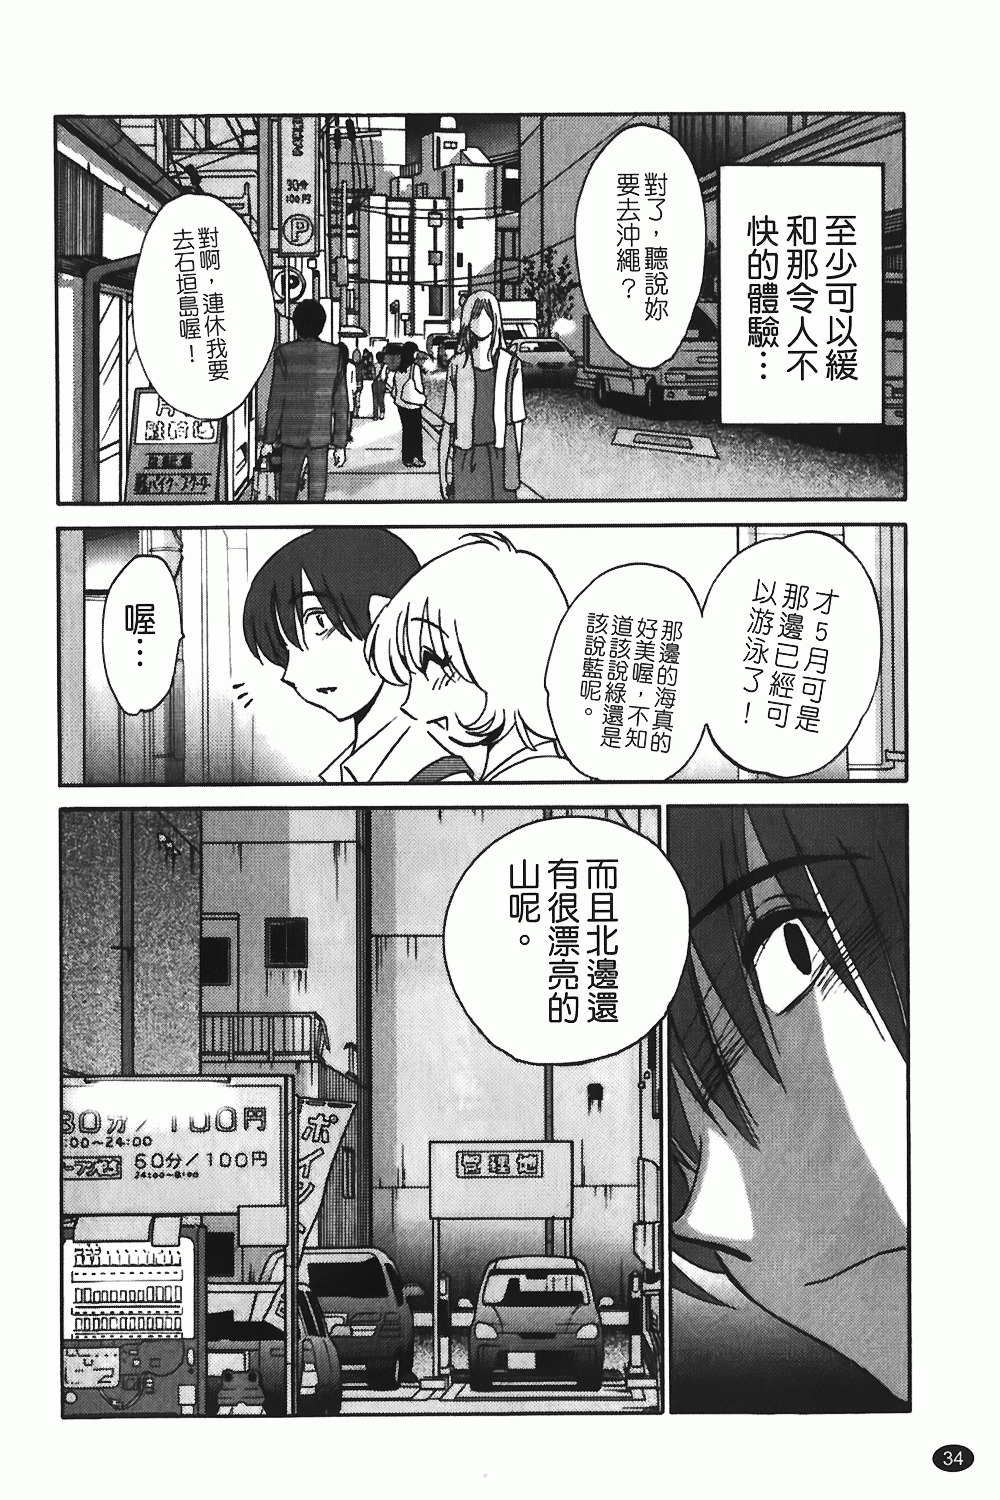 [TsuyaTsuya] Monokage no Iris 1 | 陰影中的伊利斯 1 [Chinese] page 31 full